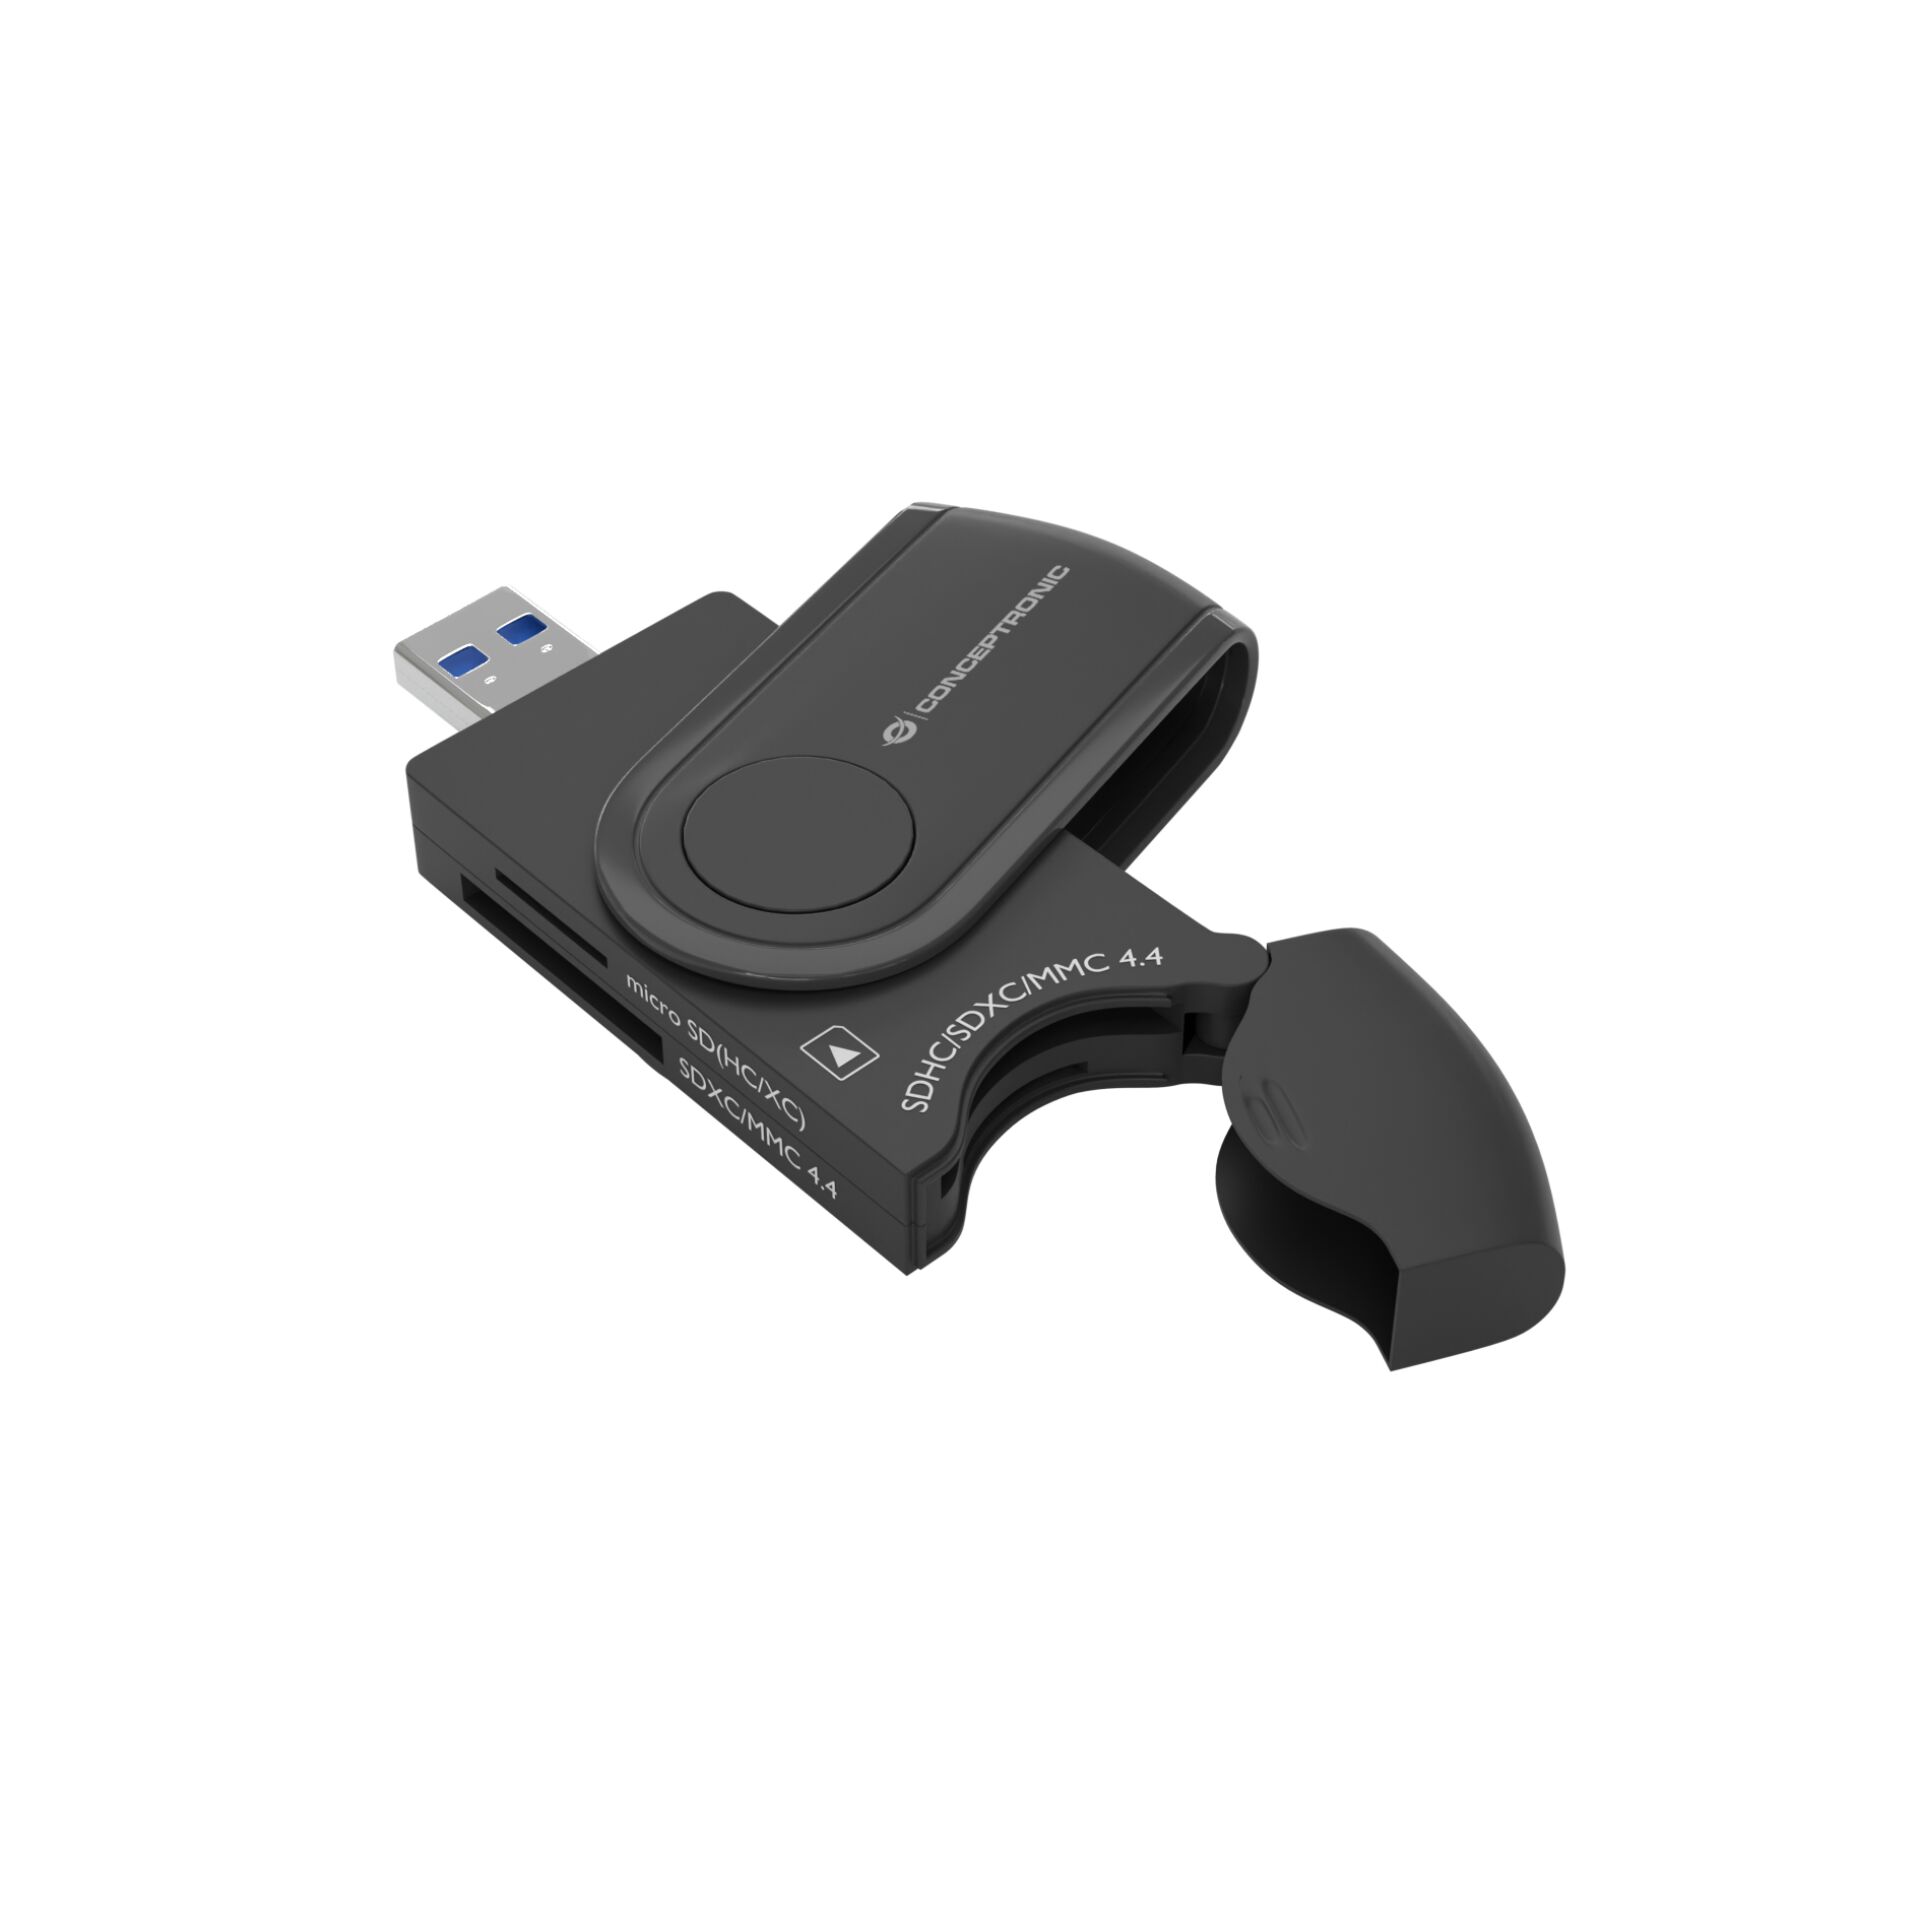 Conceptronic BIAN04B 4-in-1 Kartenleser USB 3.0